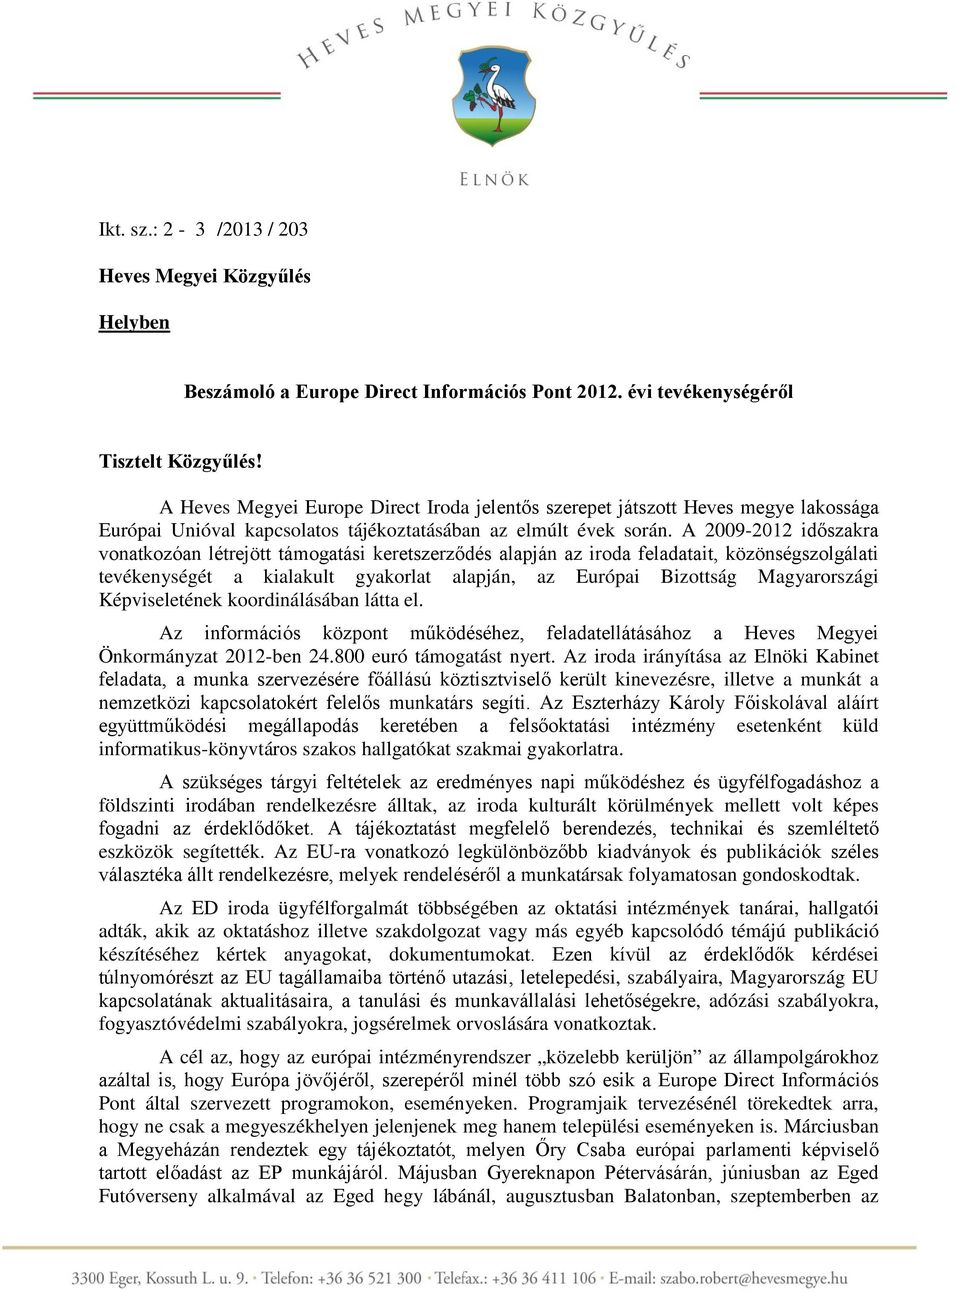 A 2009-2012 időszakra vonatkozóan létrejött támogatási keretszerződés alapján az iroda feladatait, közönségszolgálati tevékenységét a kialakult gyakorlat alapján, az Európai Bizottság Magyarországi